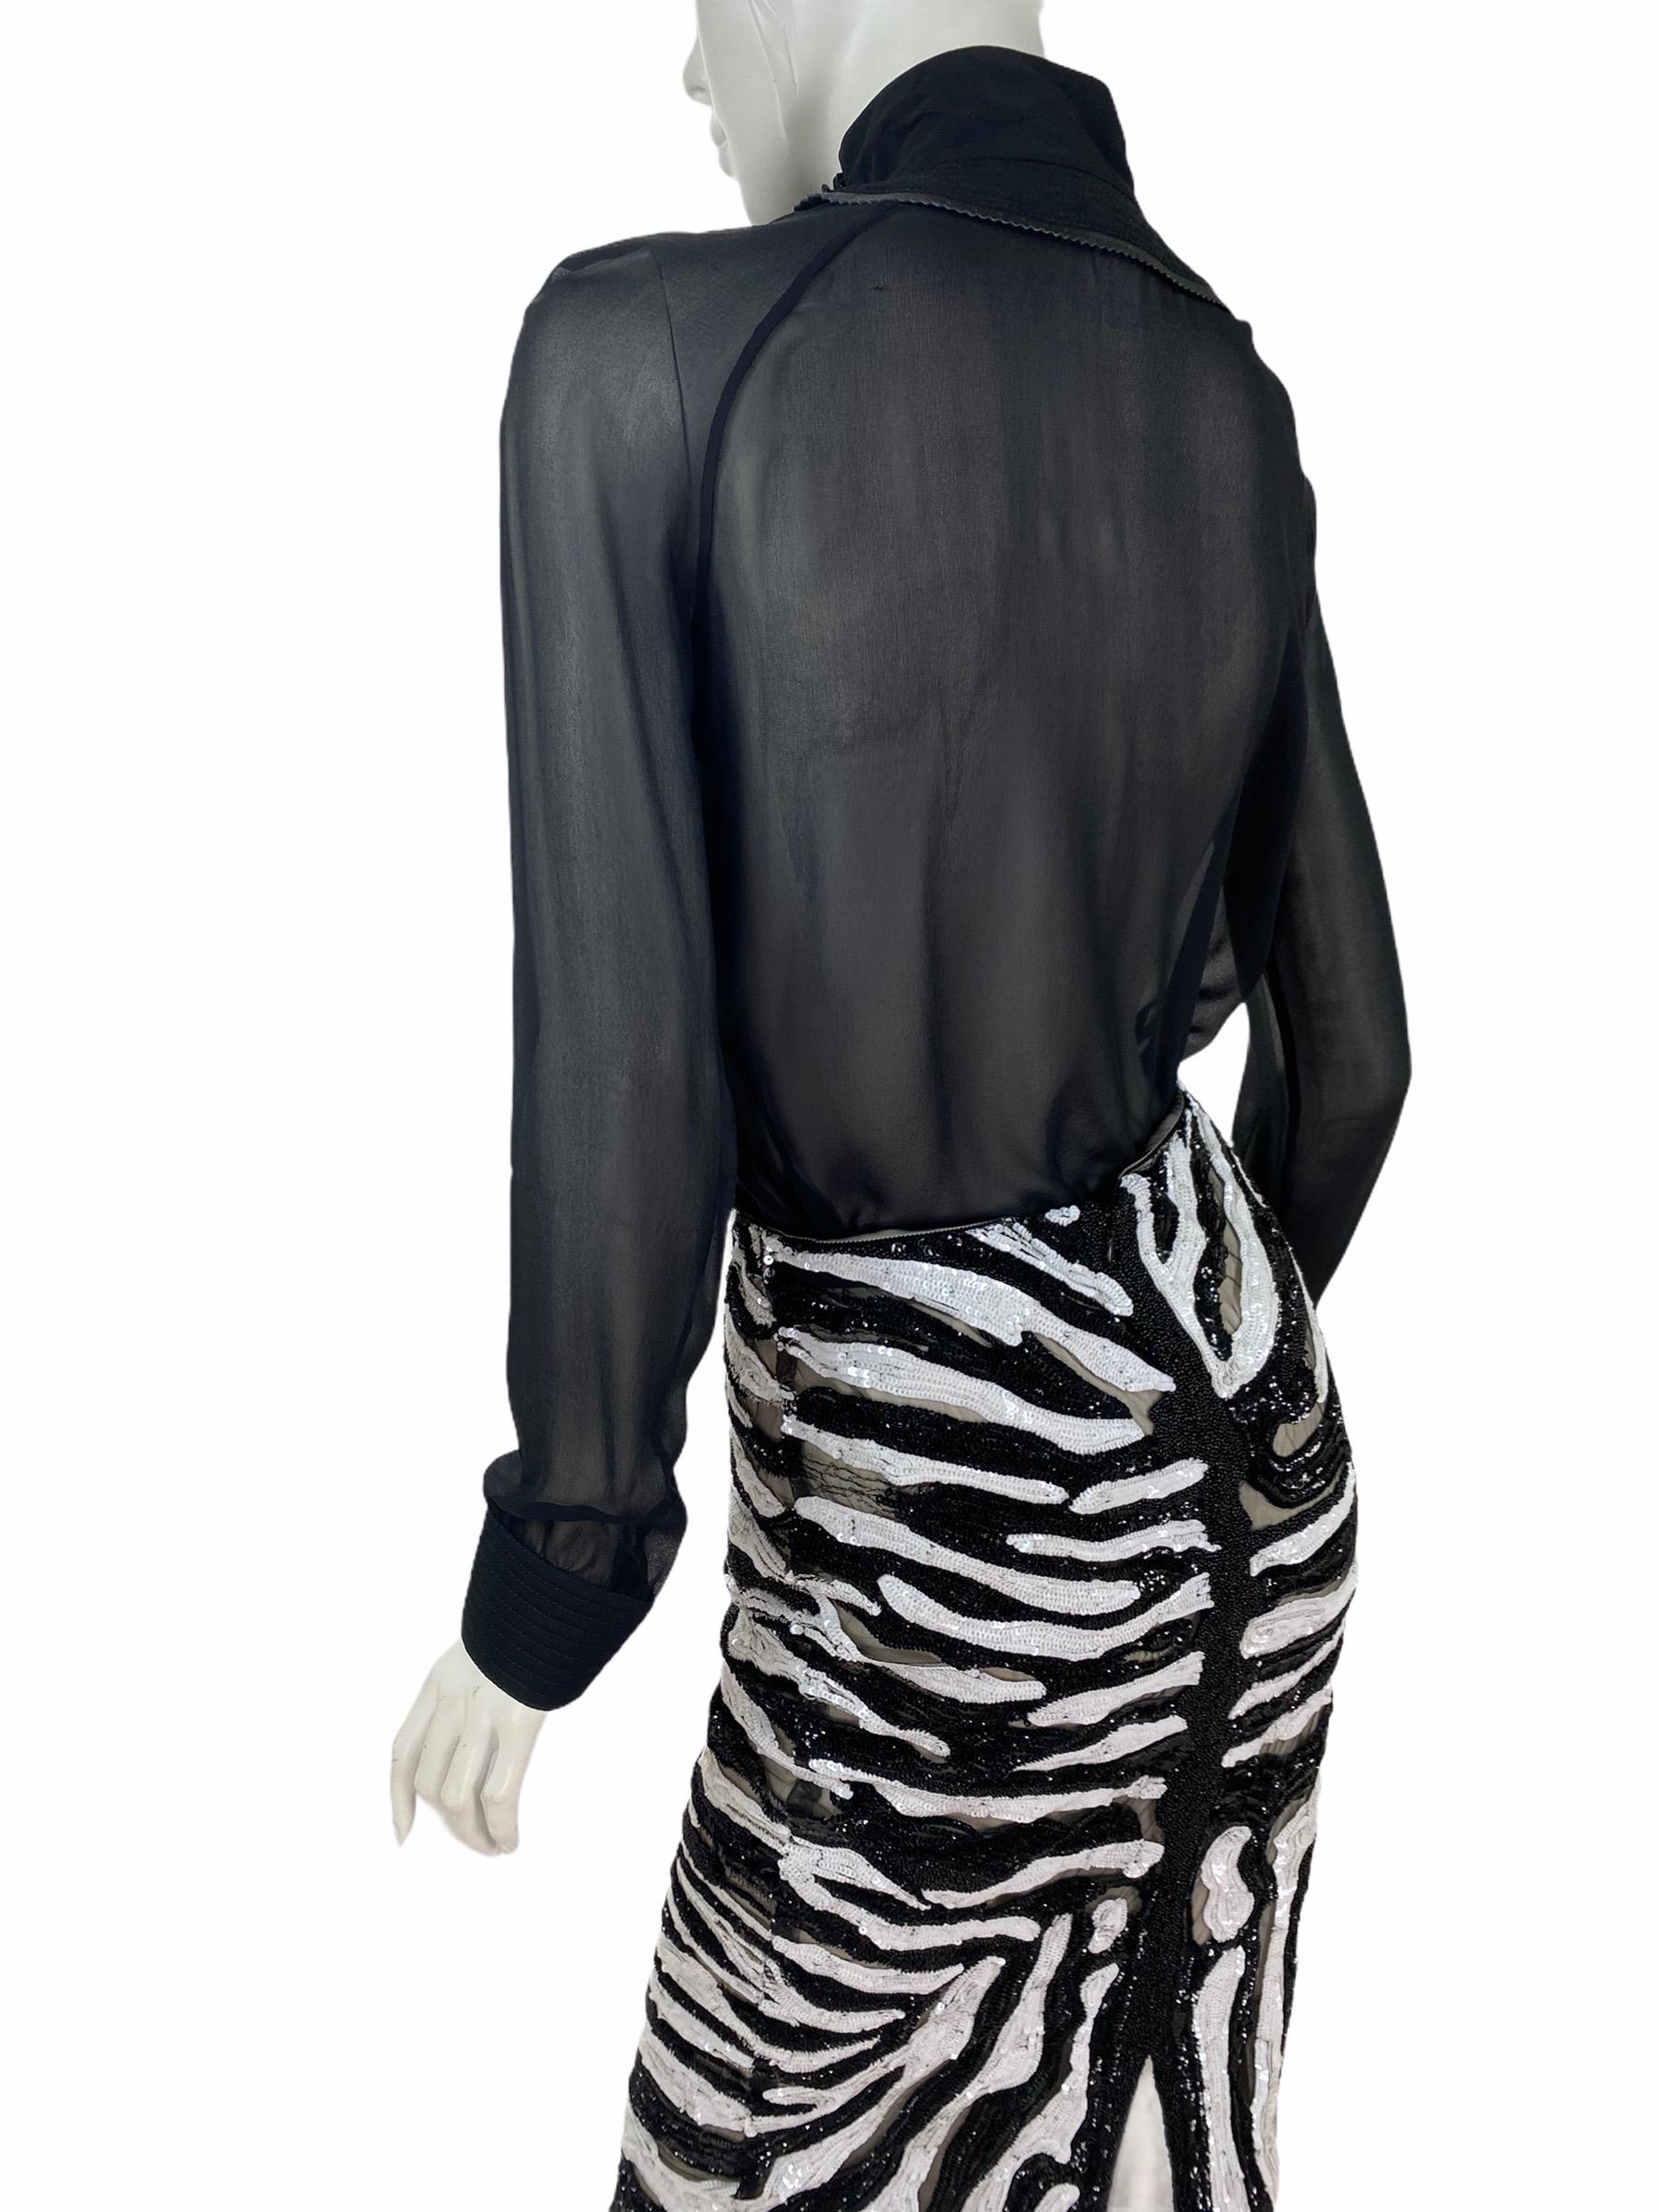 Tom Ford Beaded Tulle Zebra Skirt with Black Fringe Top 4